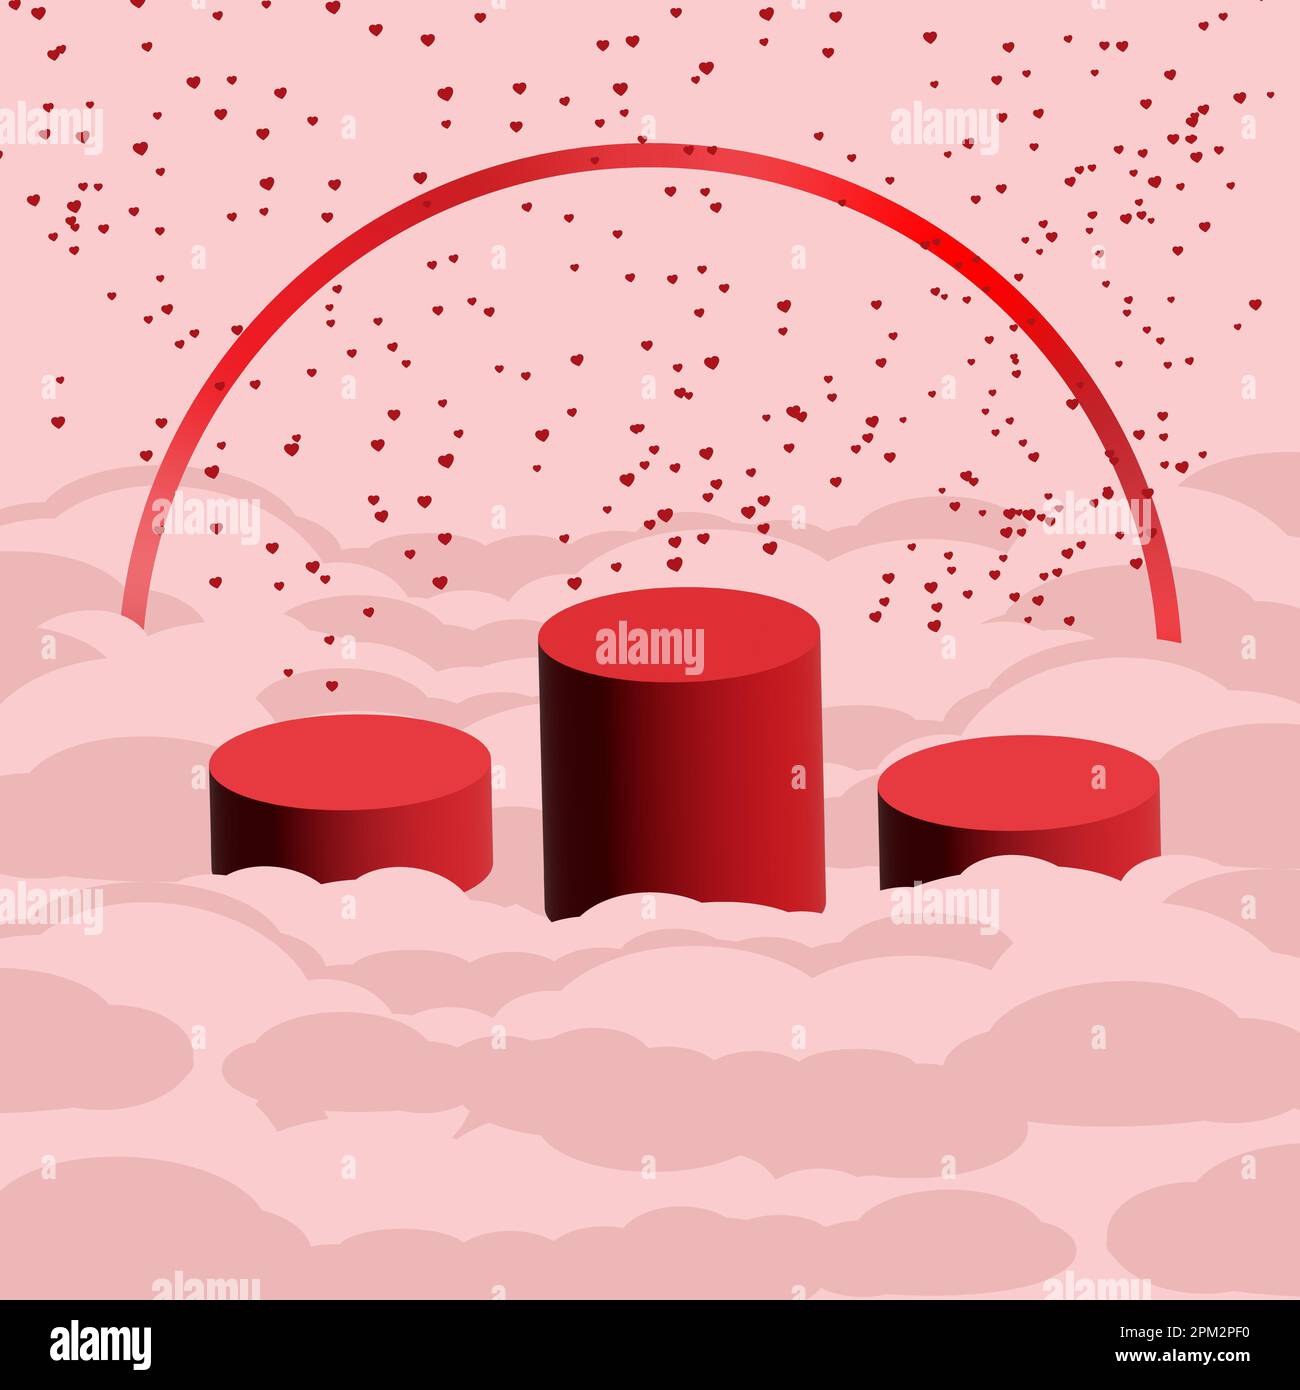 Rotes Podium auf pinkfarbenen Wolken mit rotem Herzen als Hintergrund perfekt für den Valentinstag, rotes Podium, um Ihre Produkte zum Valentinstag zu präsentieren. Stockfoto